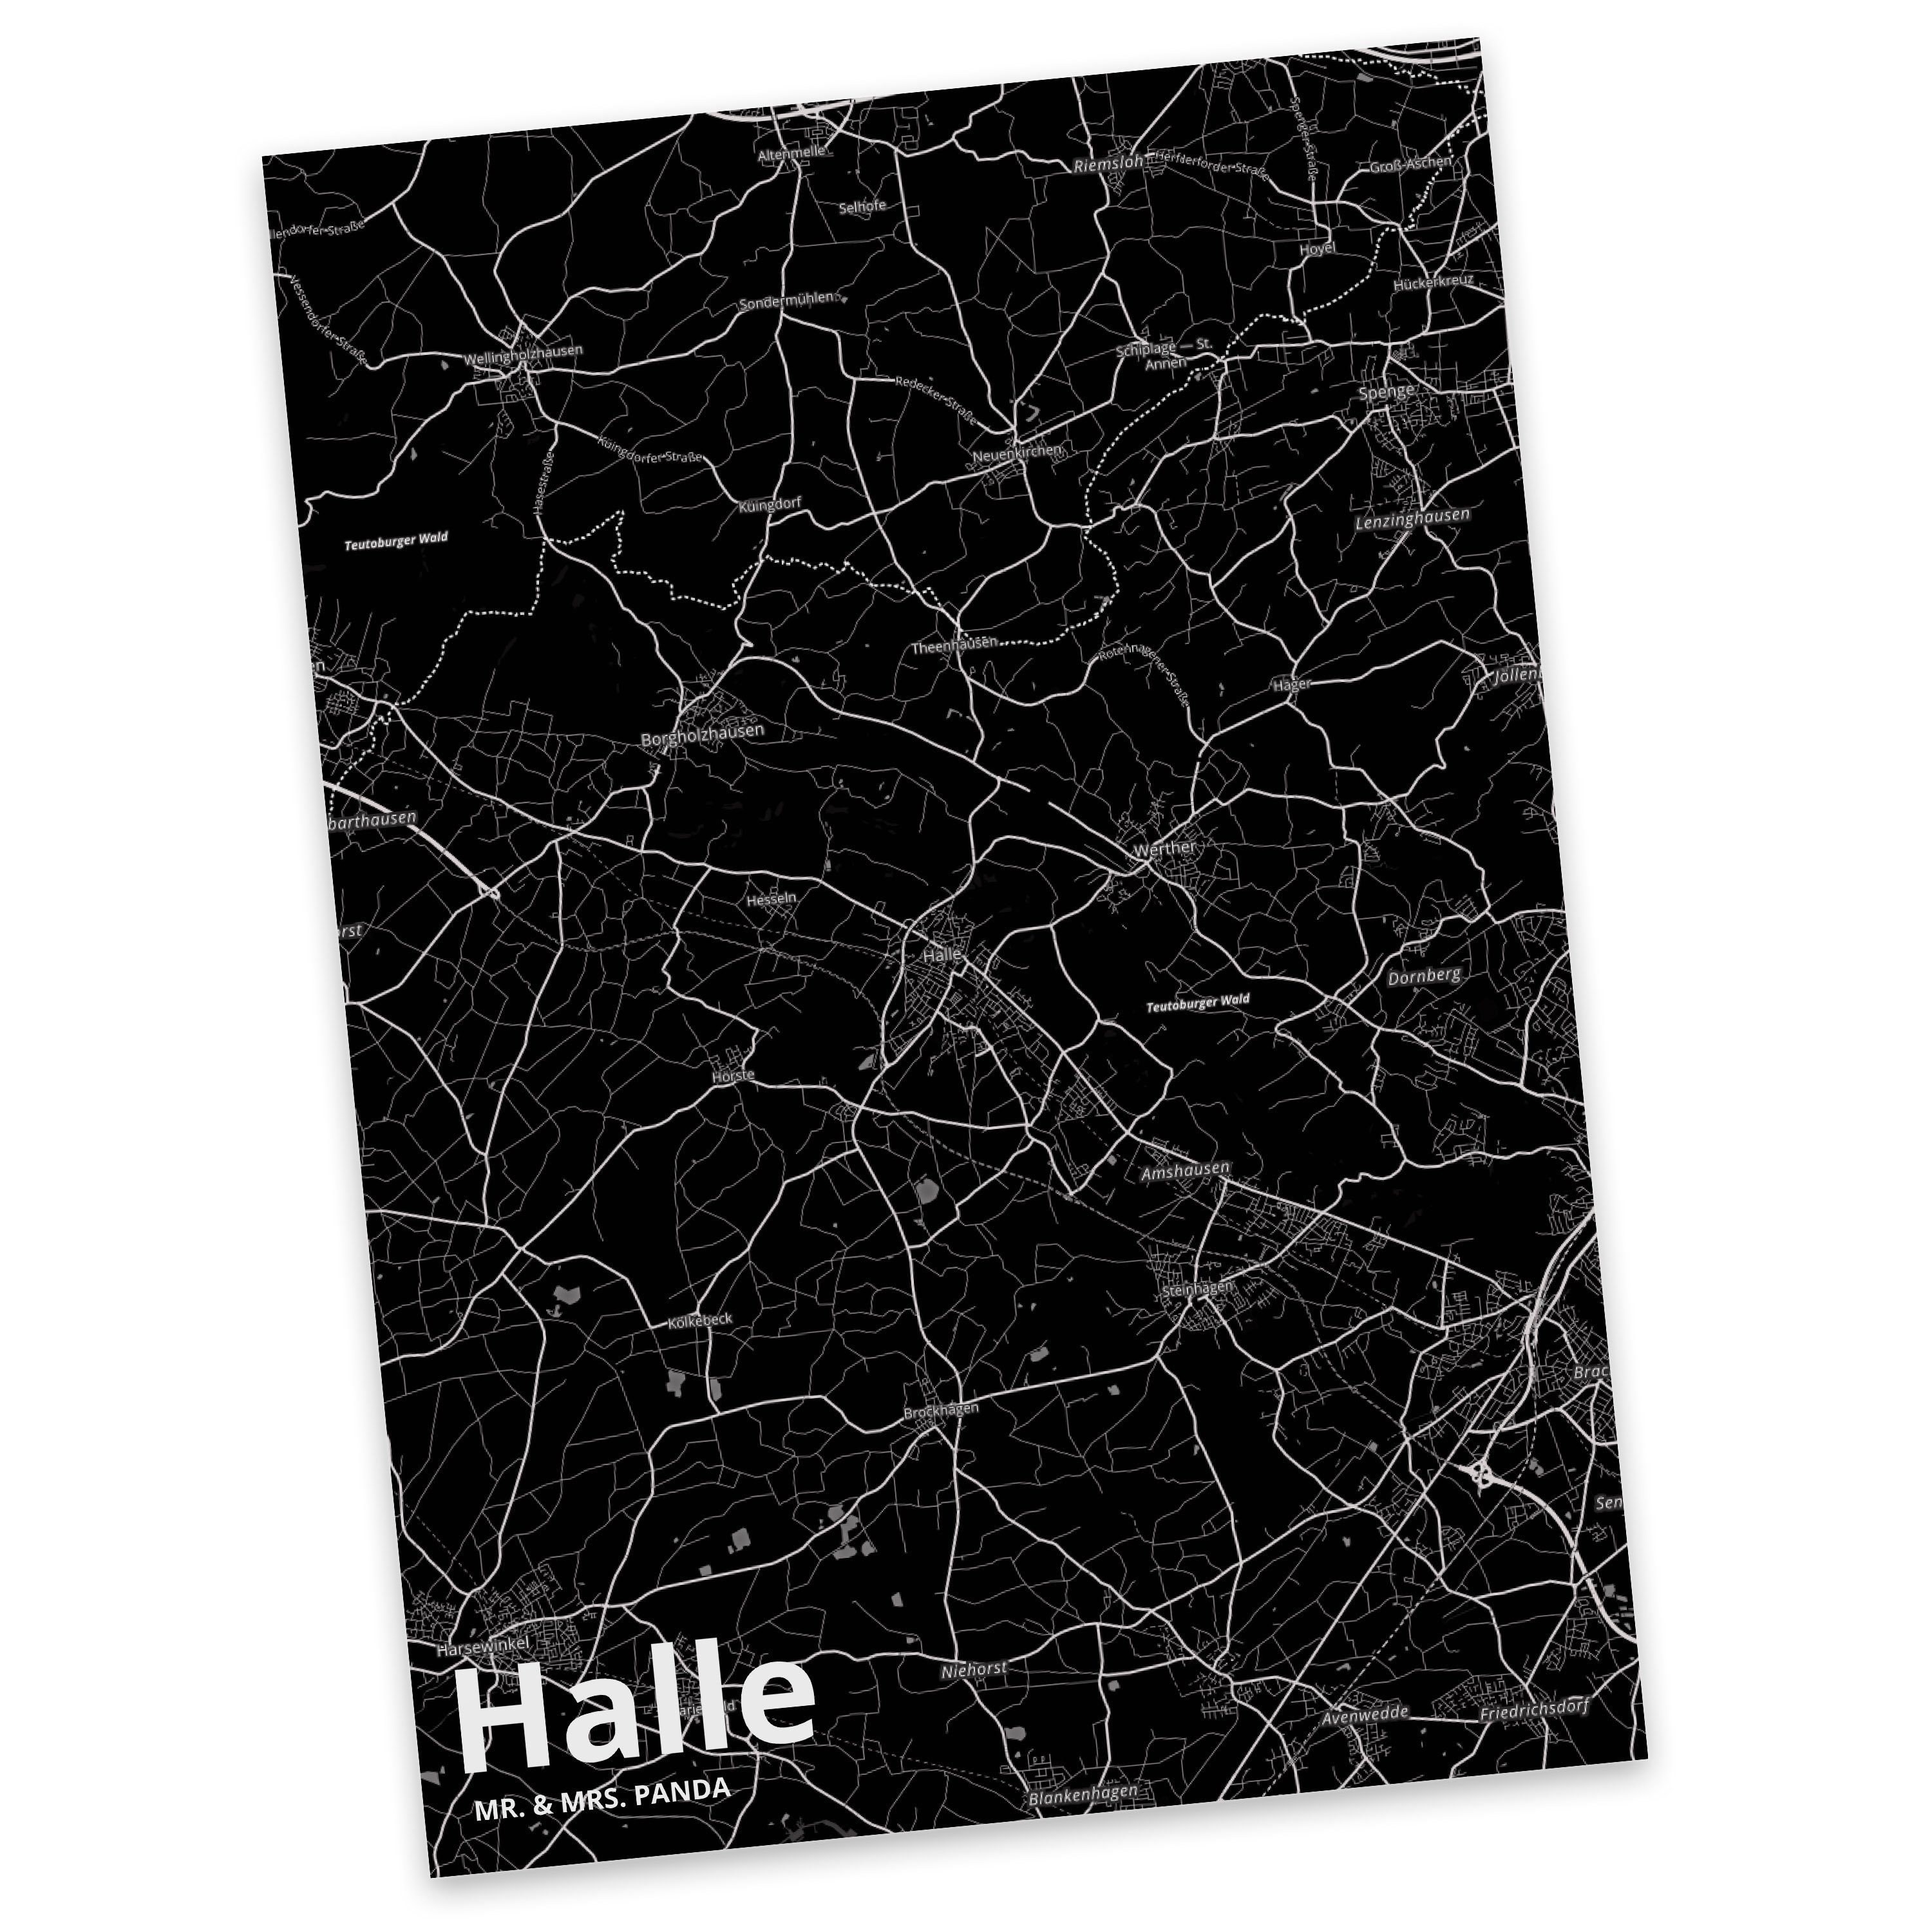 Mr. & Mrs. Panda Postkarte Halle - Geschenk, Stadt Dorf Karte Landkarte Map Stadtplan, Grußkarte